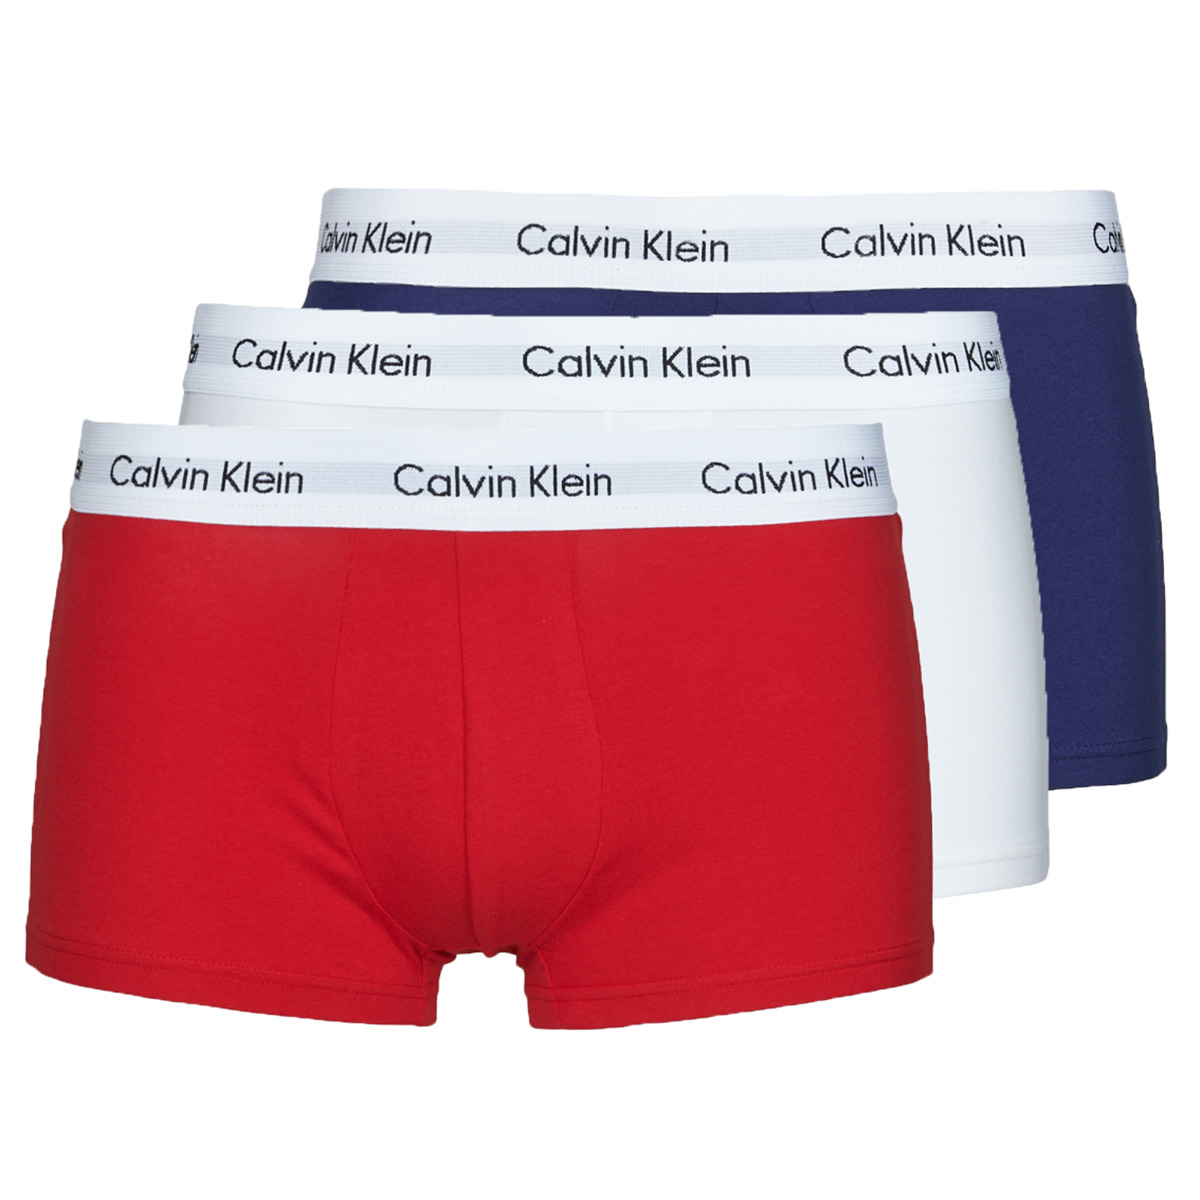 Sous-vêtements Homme Calvin Klein Jeans Icarus Vita sneakers RISE TRUNK X3 Marine / Blanc / Rouge